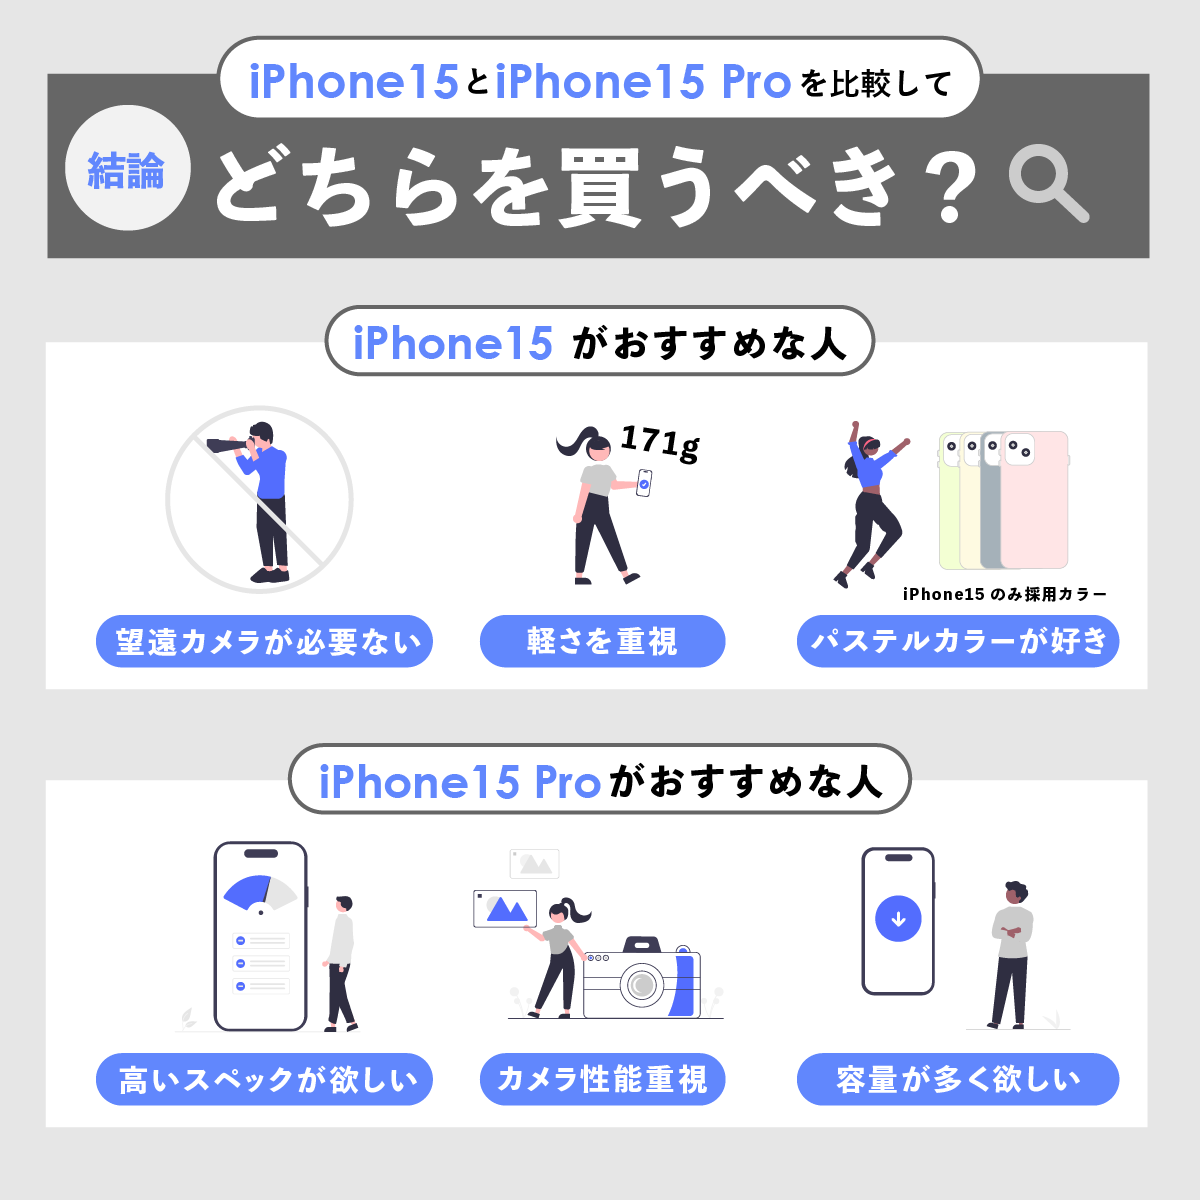 【結論】iPhone15とiPhone15 Proを比較してどちらを買うべき？